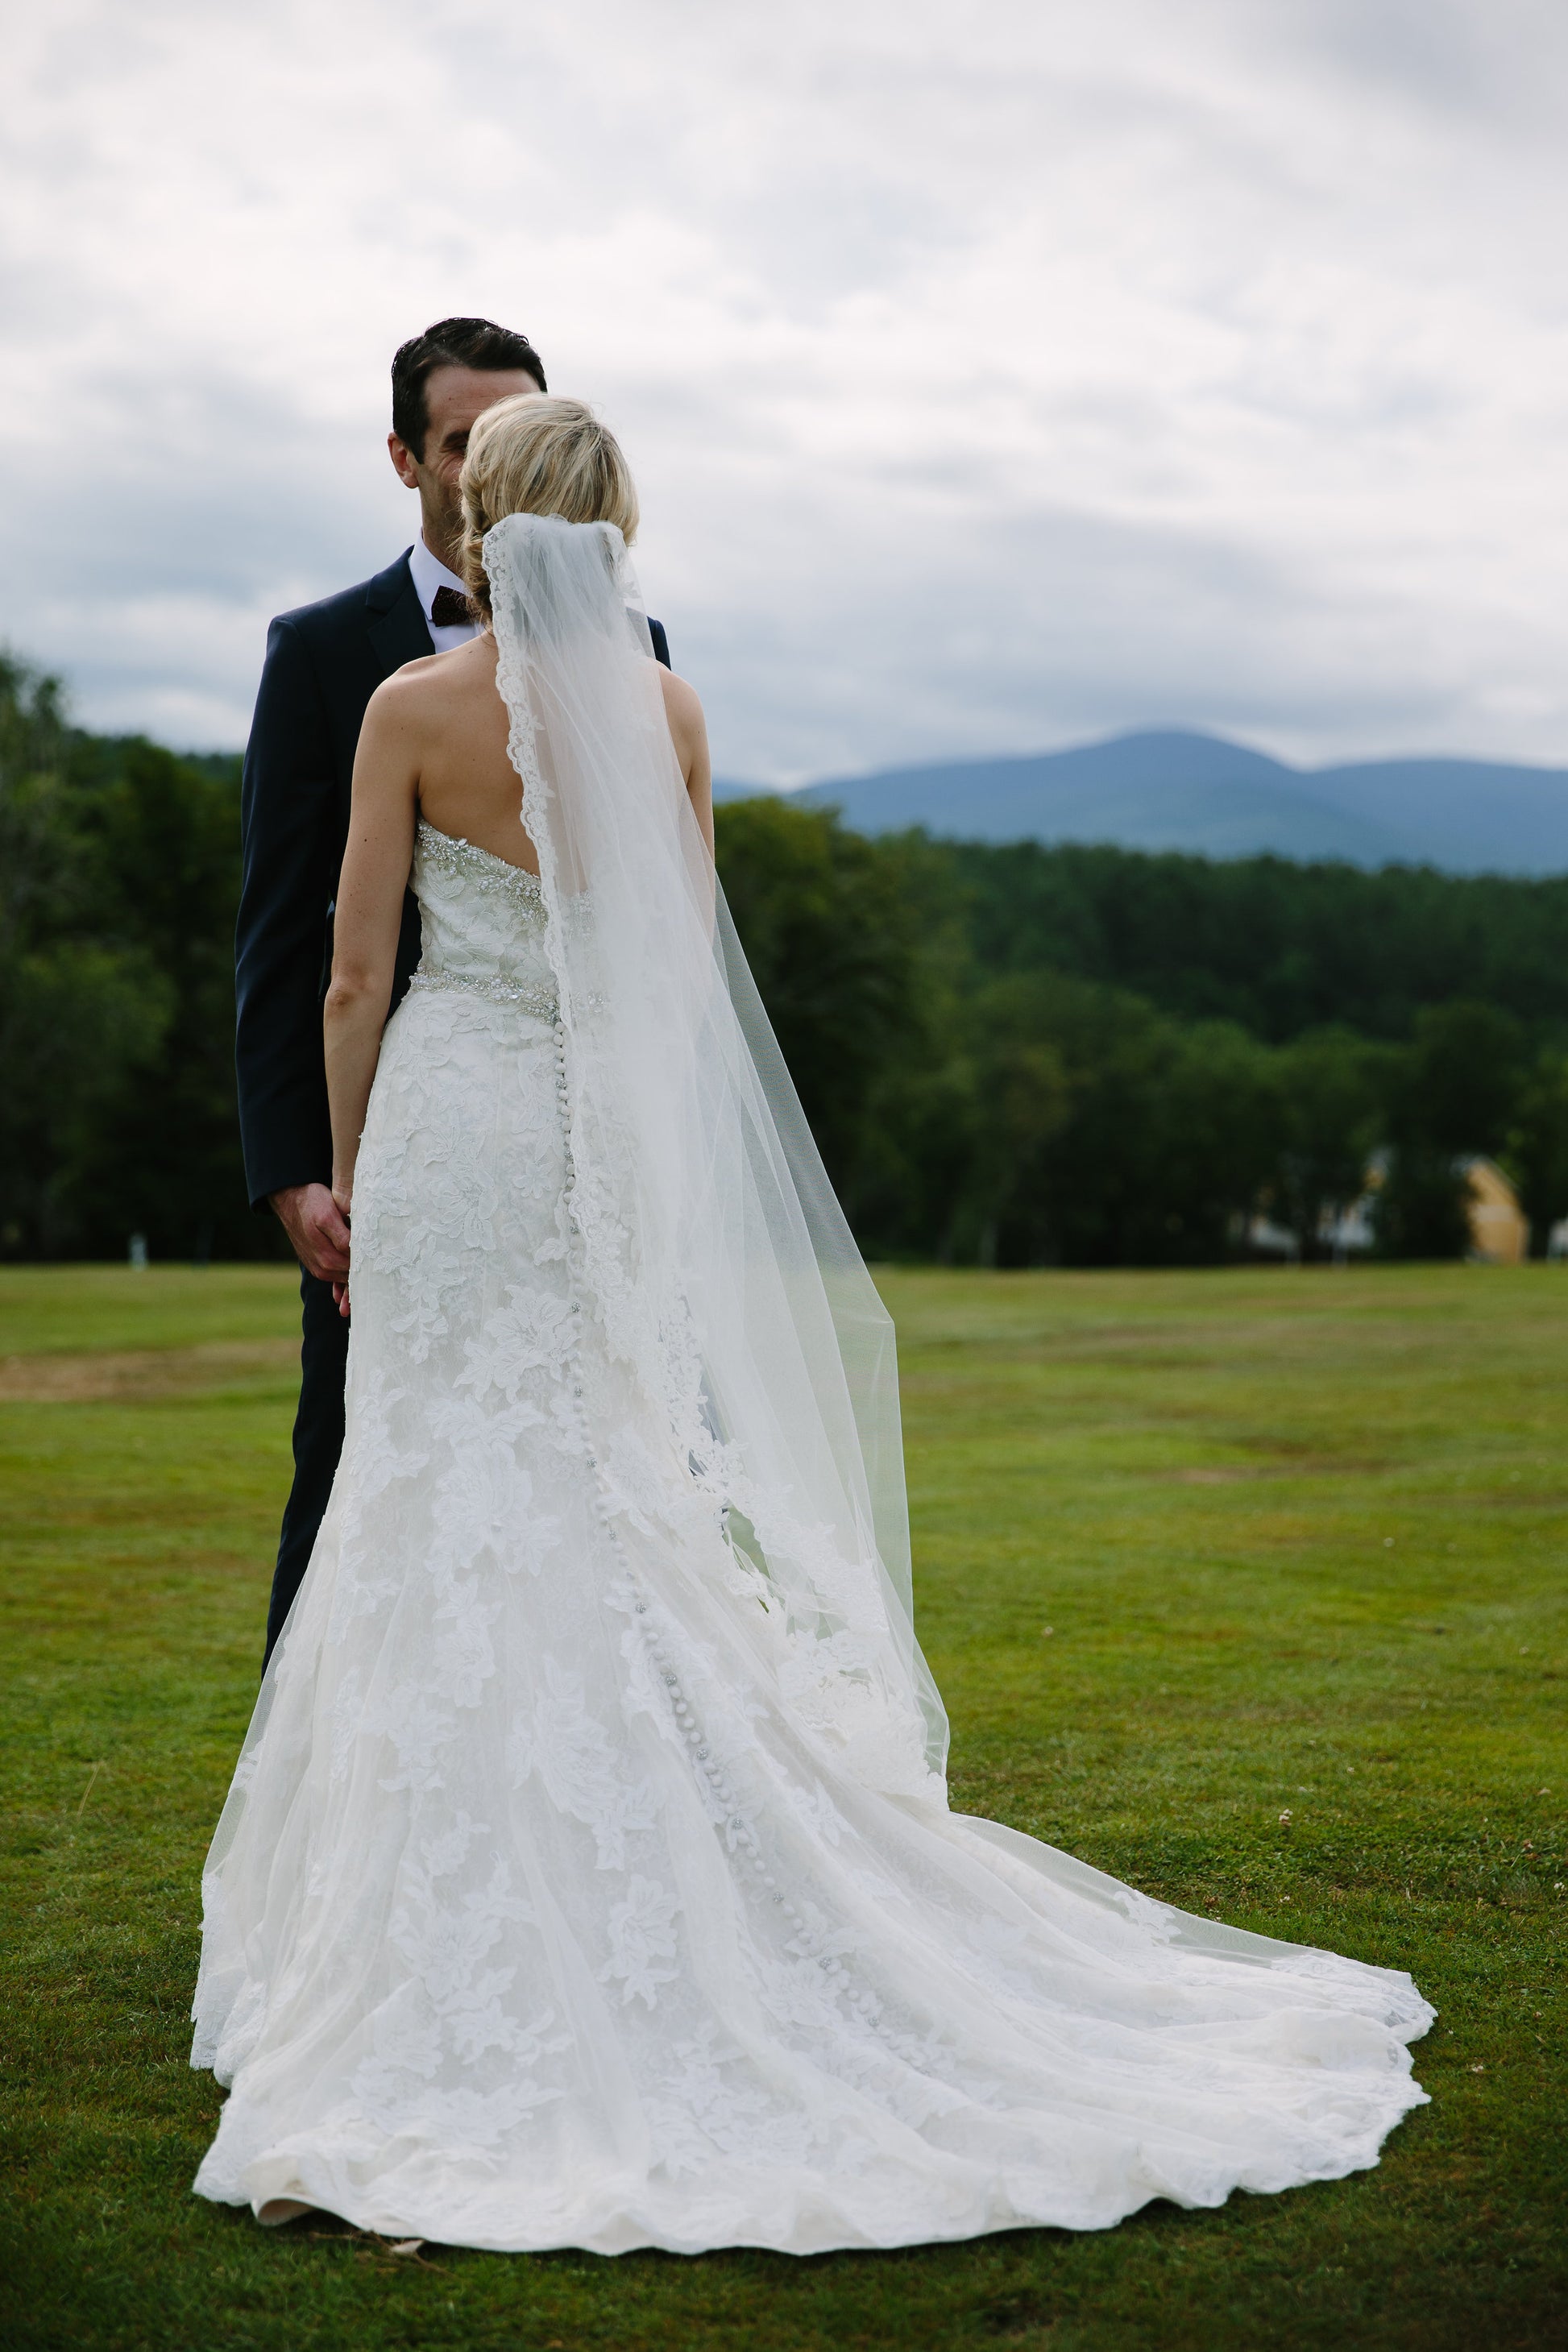 One Blushing Bride Lace Waltz Length Wedding Veil, White / Off White / Ivory Bridal Veil Light Ivory / Waltz 45-48 inch / No Beading